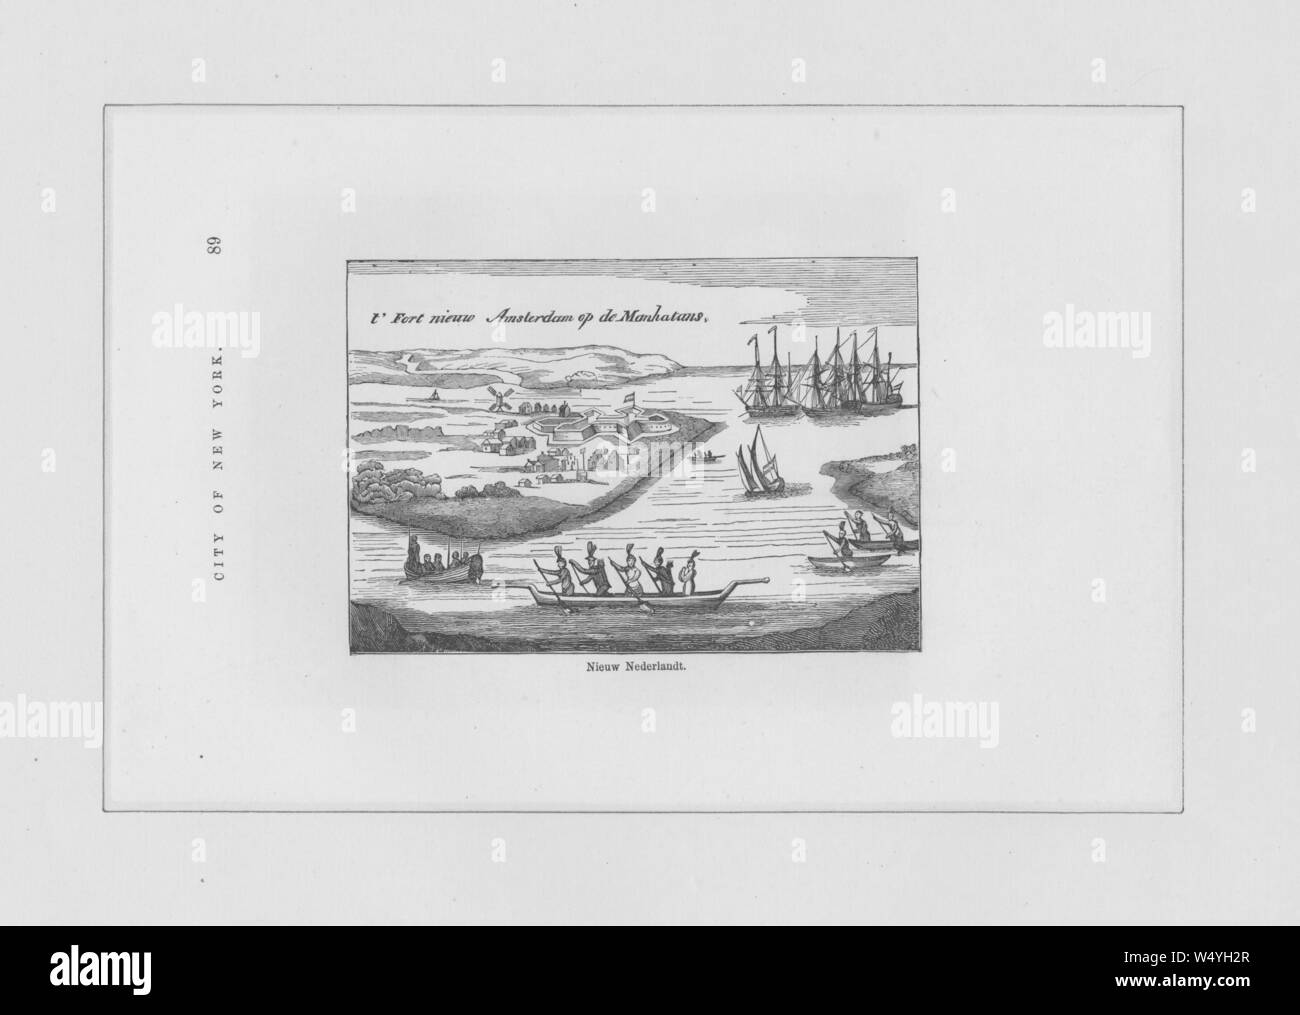 Gravure du New Netherland, un 17e siècle colonie de la République néerlandaise situé sur la côte est d'Amérique, 1700. À partir de la Bibliothèque publique de New York. () Banque D'Images